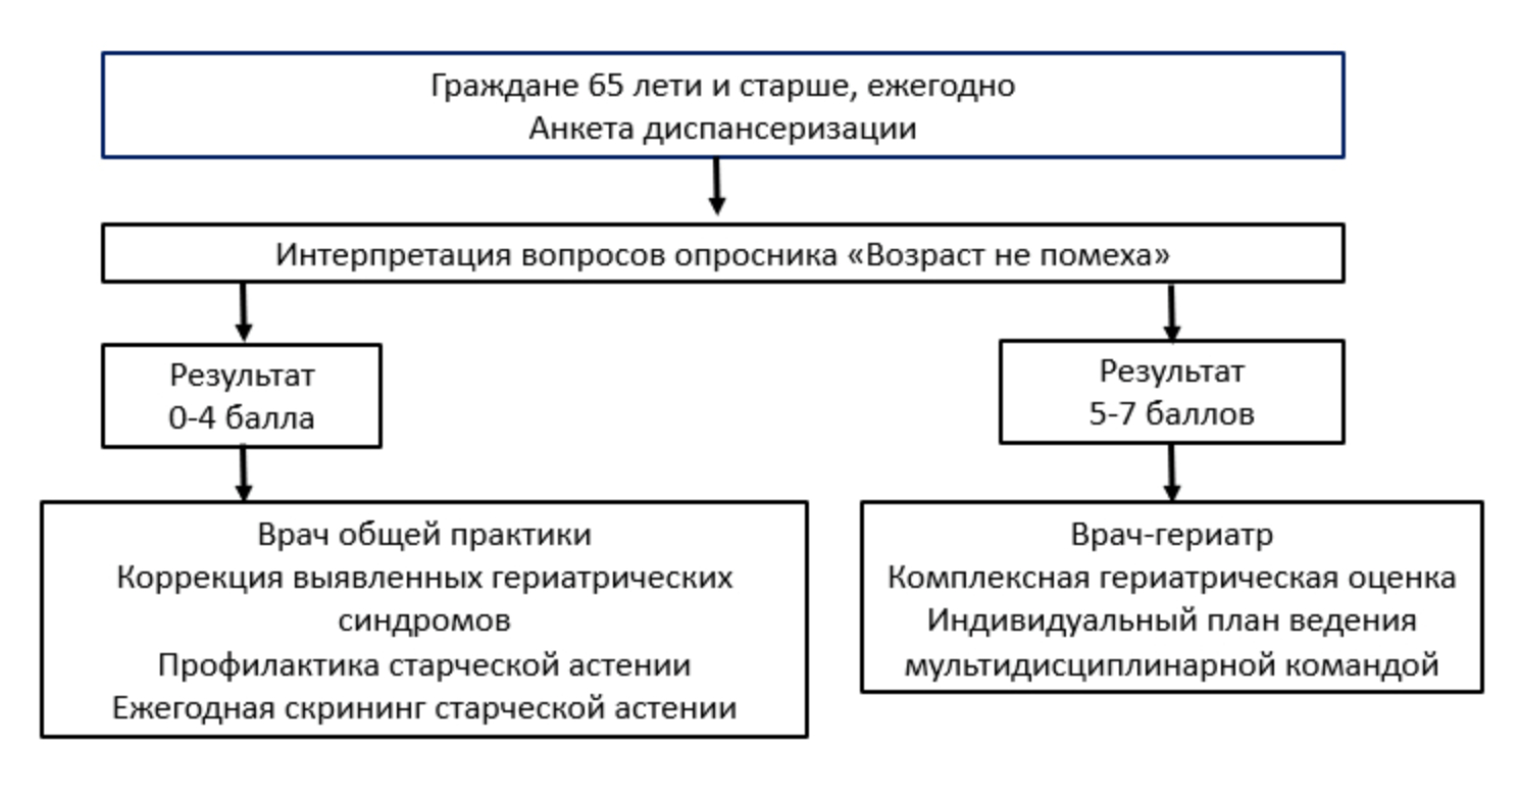 Пример интерпретации ответов для определения врача, который будет вести пациента. Источник: rgnkc.ru